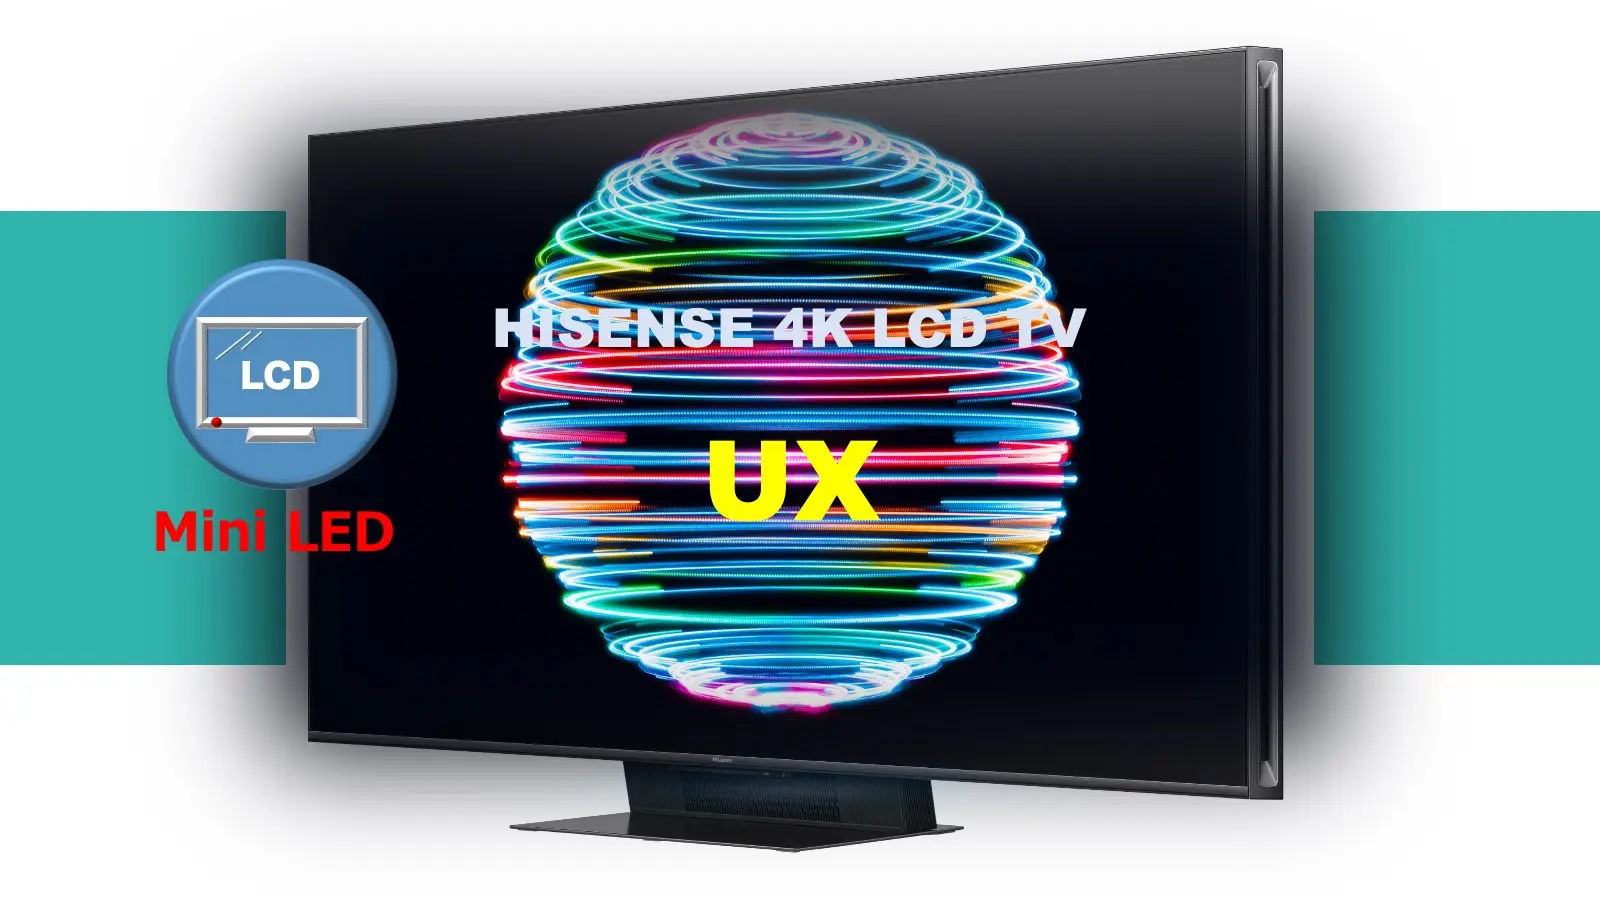 ハイセンス4K Mini LED液晶テレビ UXレビュー記事用のオリジナルアイキャッチ画像